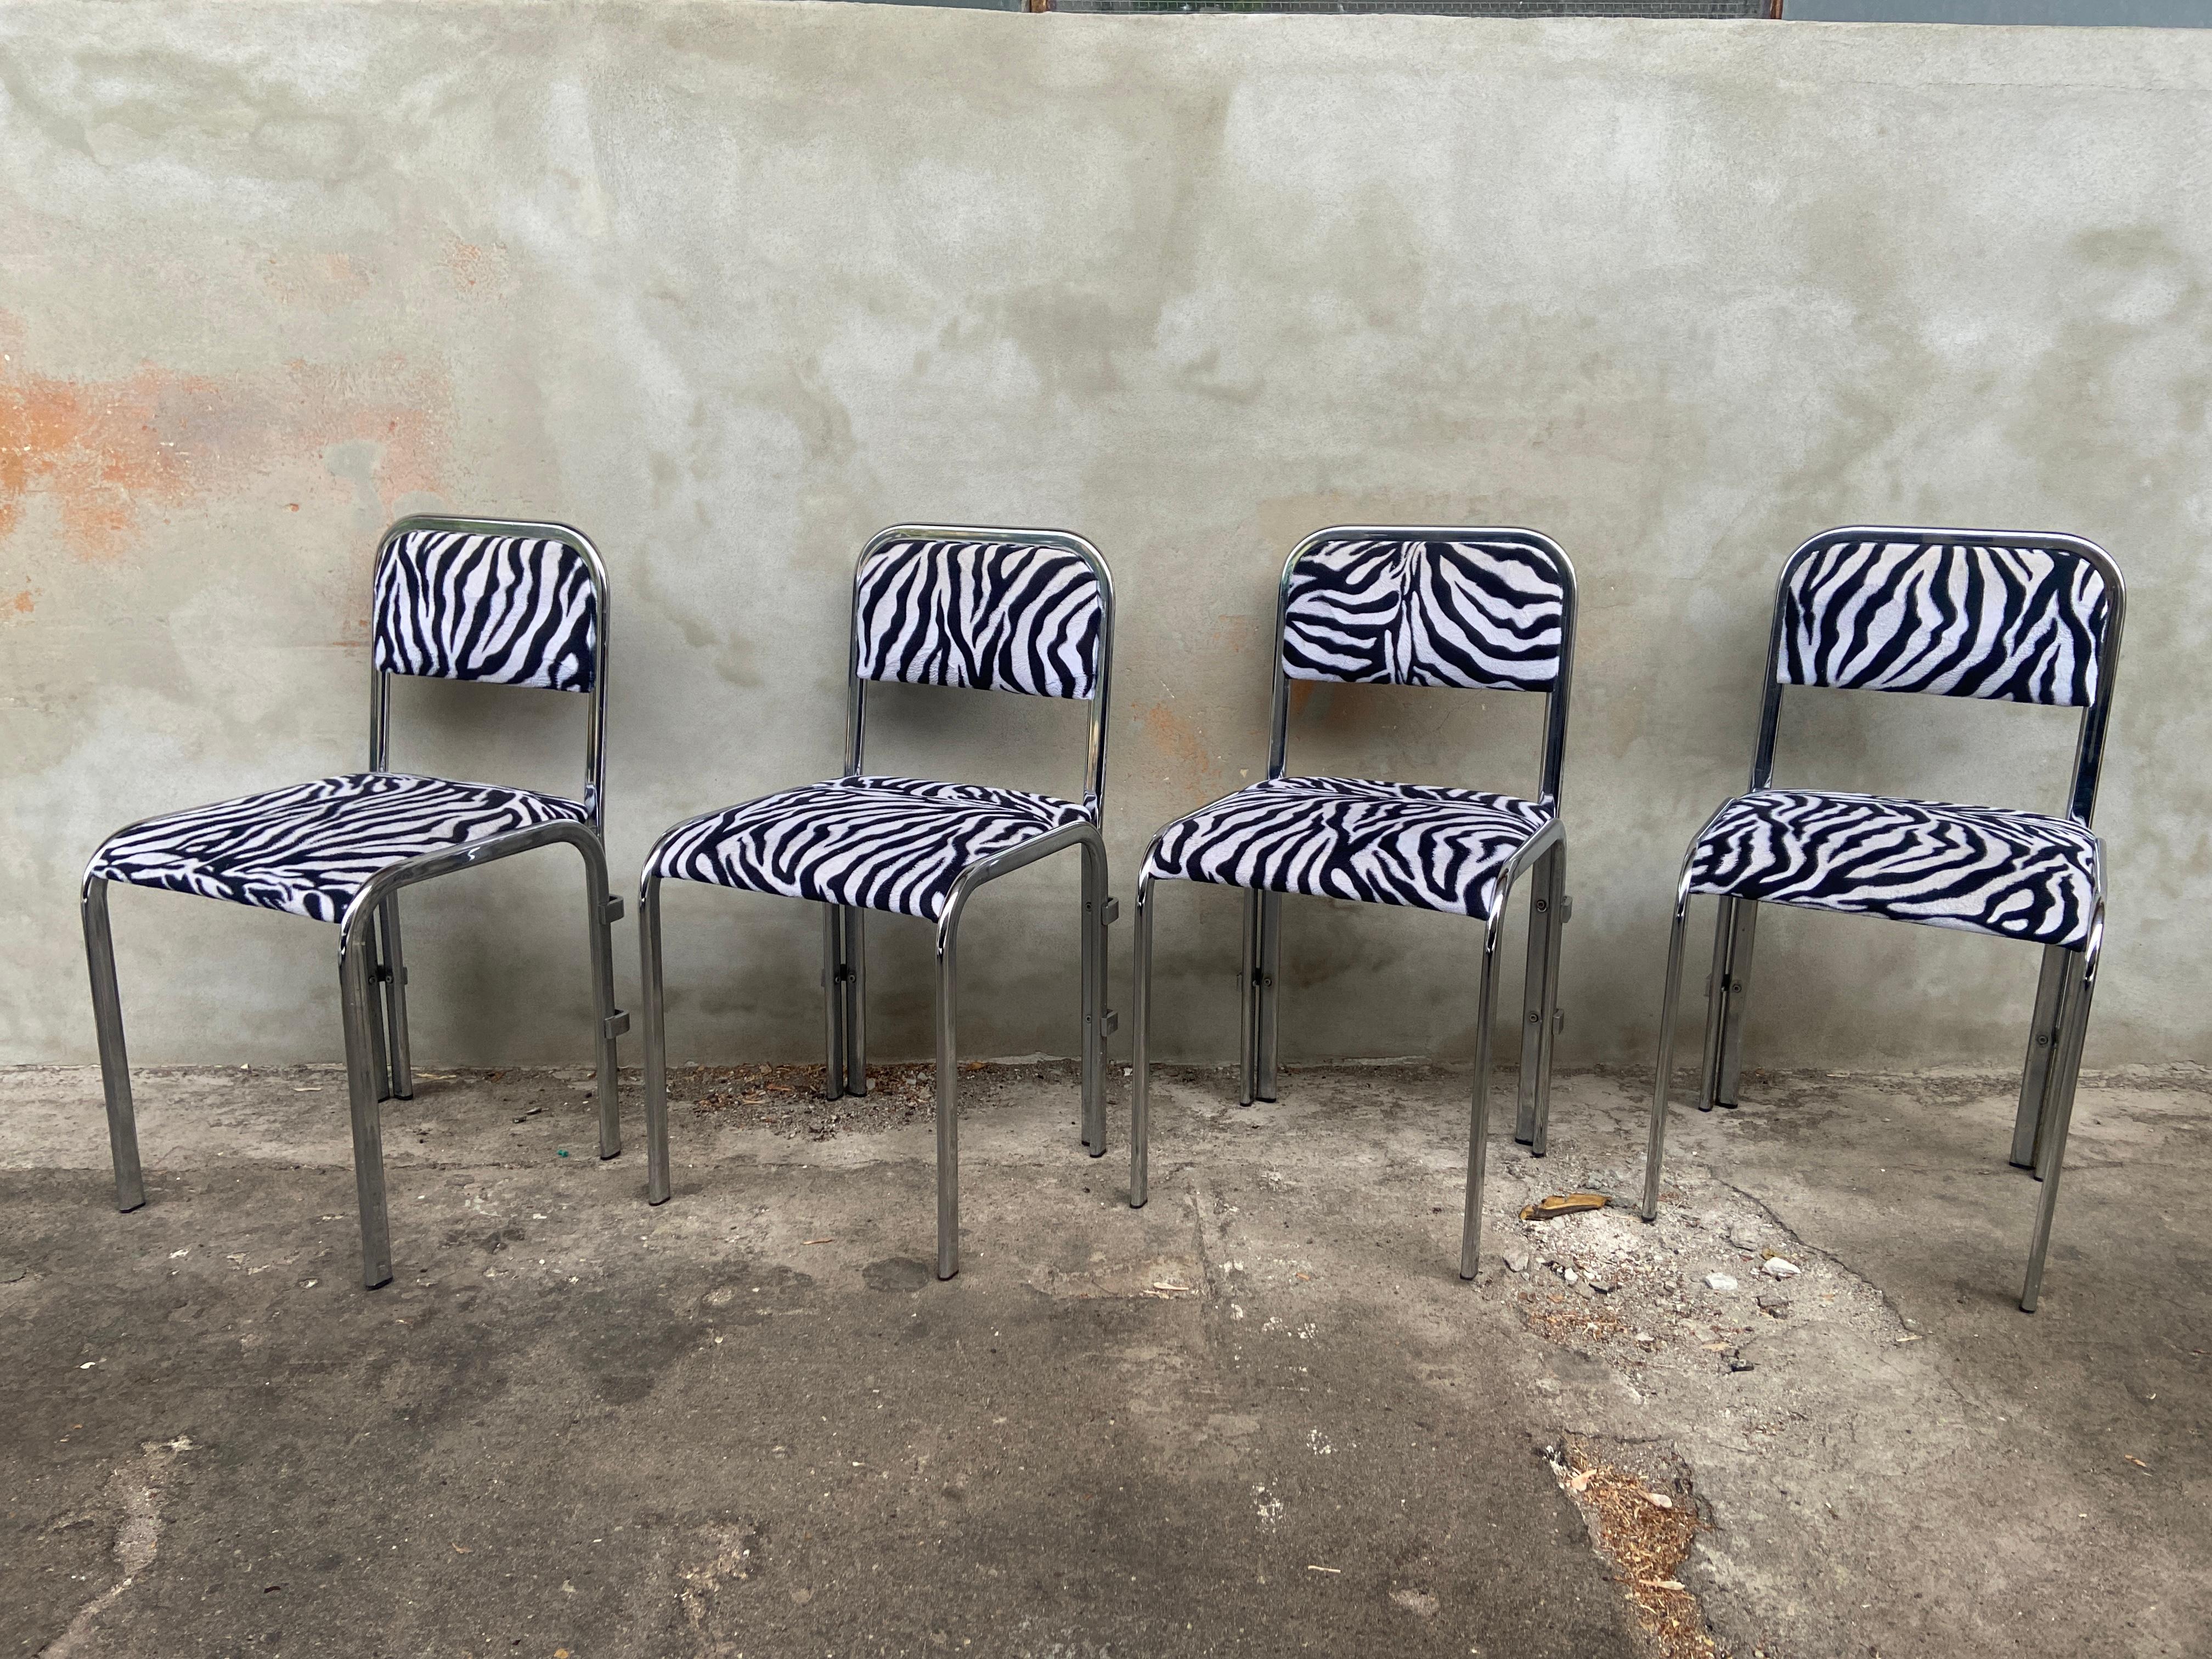 Französischer Satz von vier verchromten Esszimmerstühlen aus der Jahrhundertmitte, bezogen mit dem Original-Zebra-Stoff. 1970s
Das Set ist in einem wirklich guten Vintage-Zustand mit einer schönen Patina aufgrund von Alter und Gebrauch.
Diese